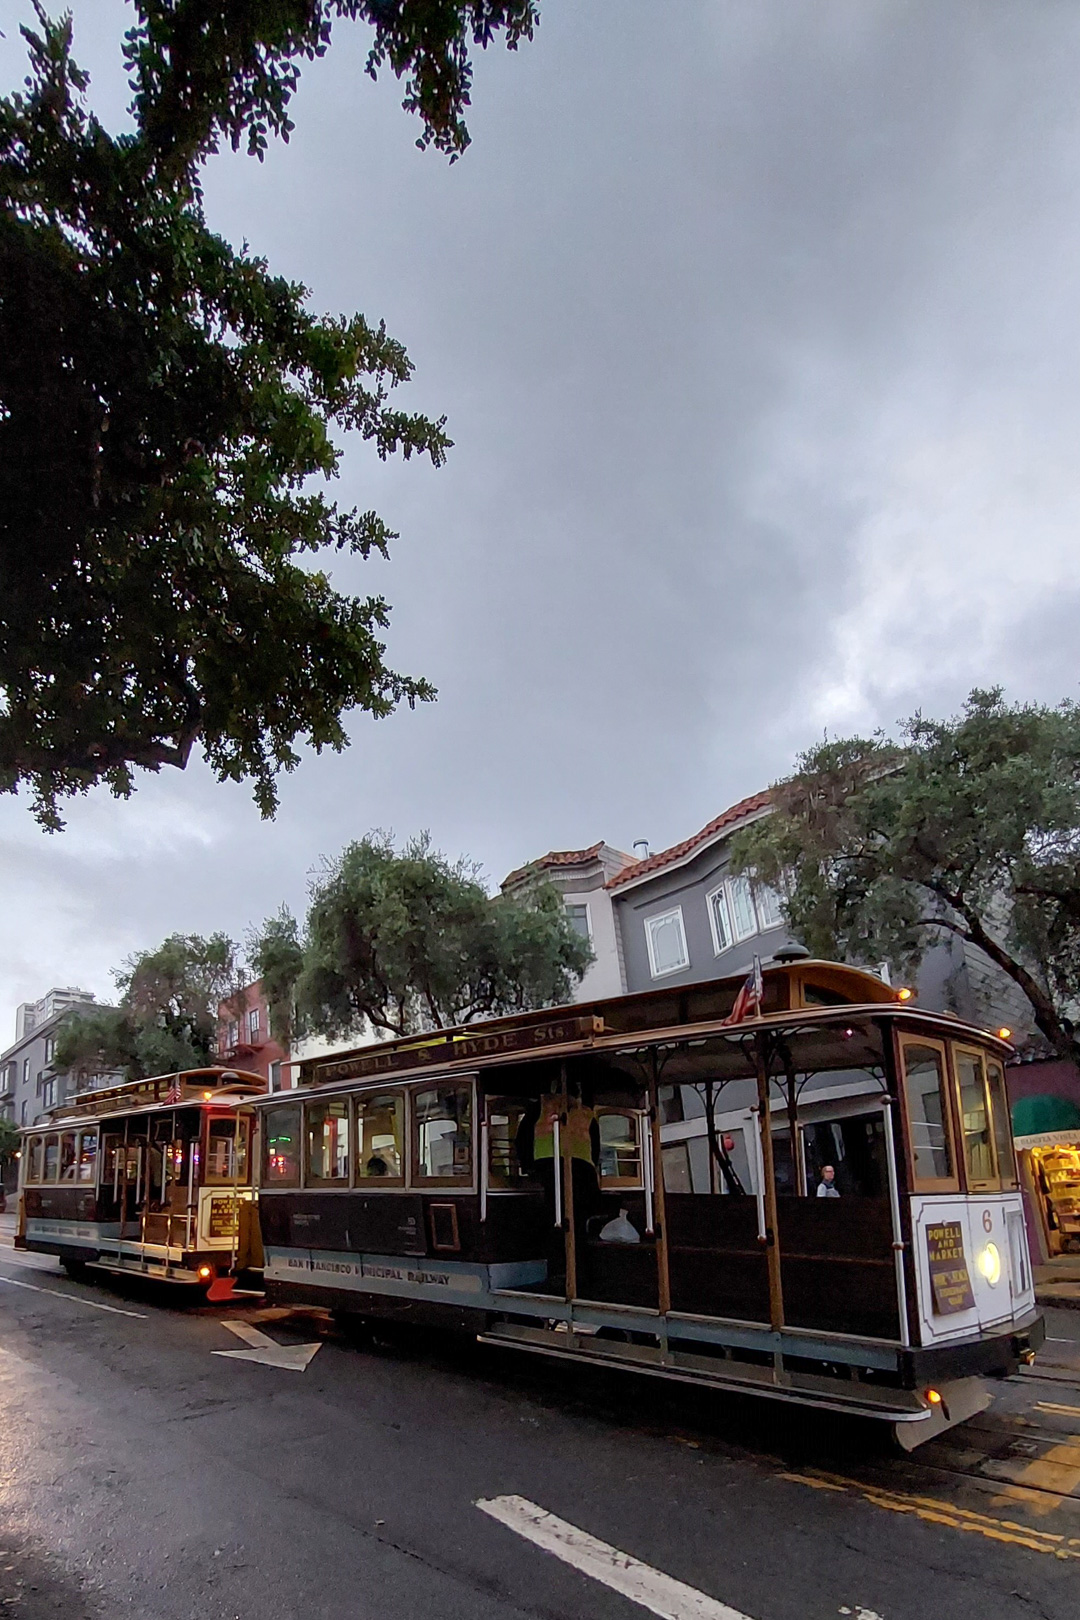 obraz: tramwaj linowy (dwa wagony), jezdnia, zachmurzone niebo, drzewo w rogu kadru